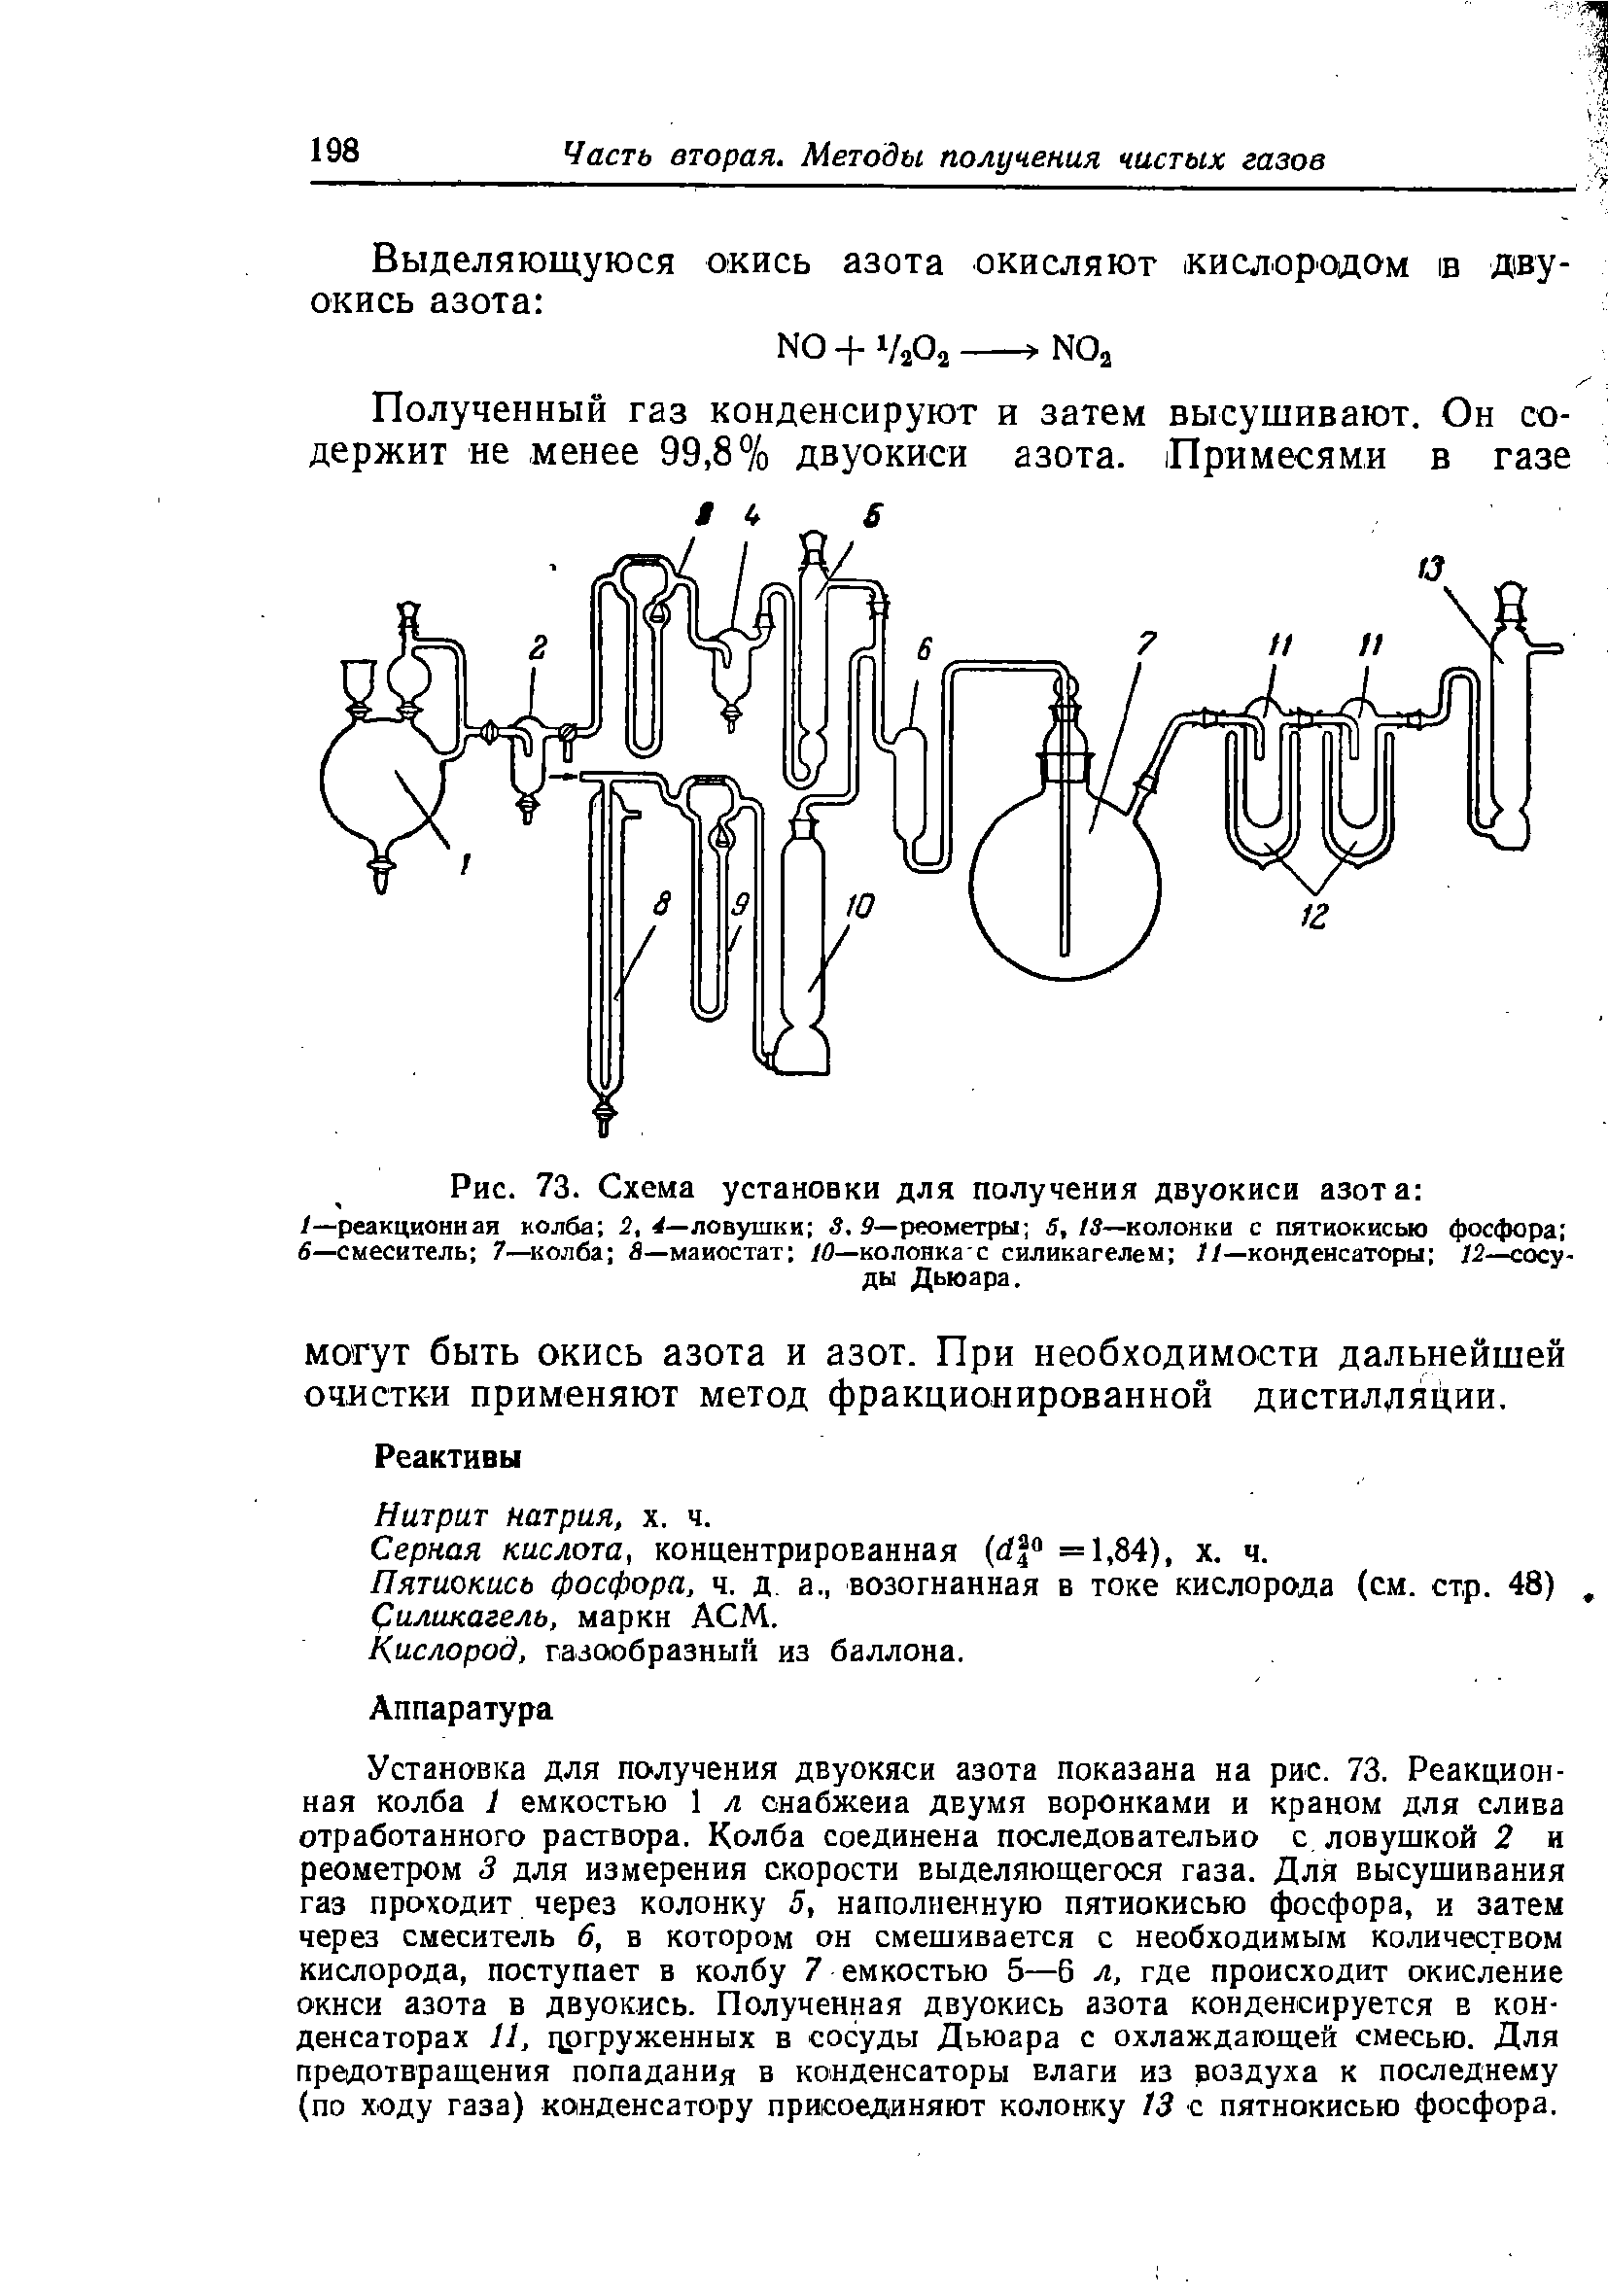 Серная кислота, концентрированная ( 1 =1,84), х. ч.